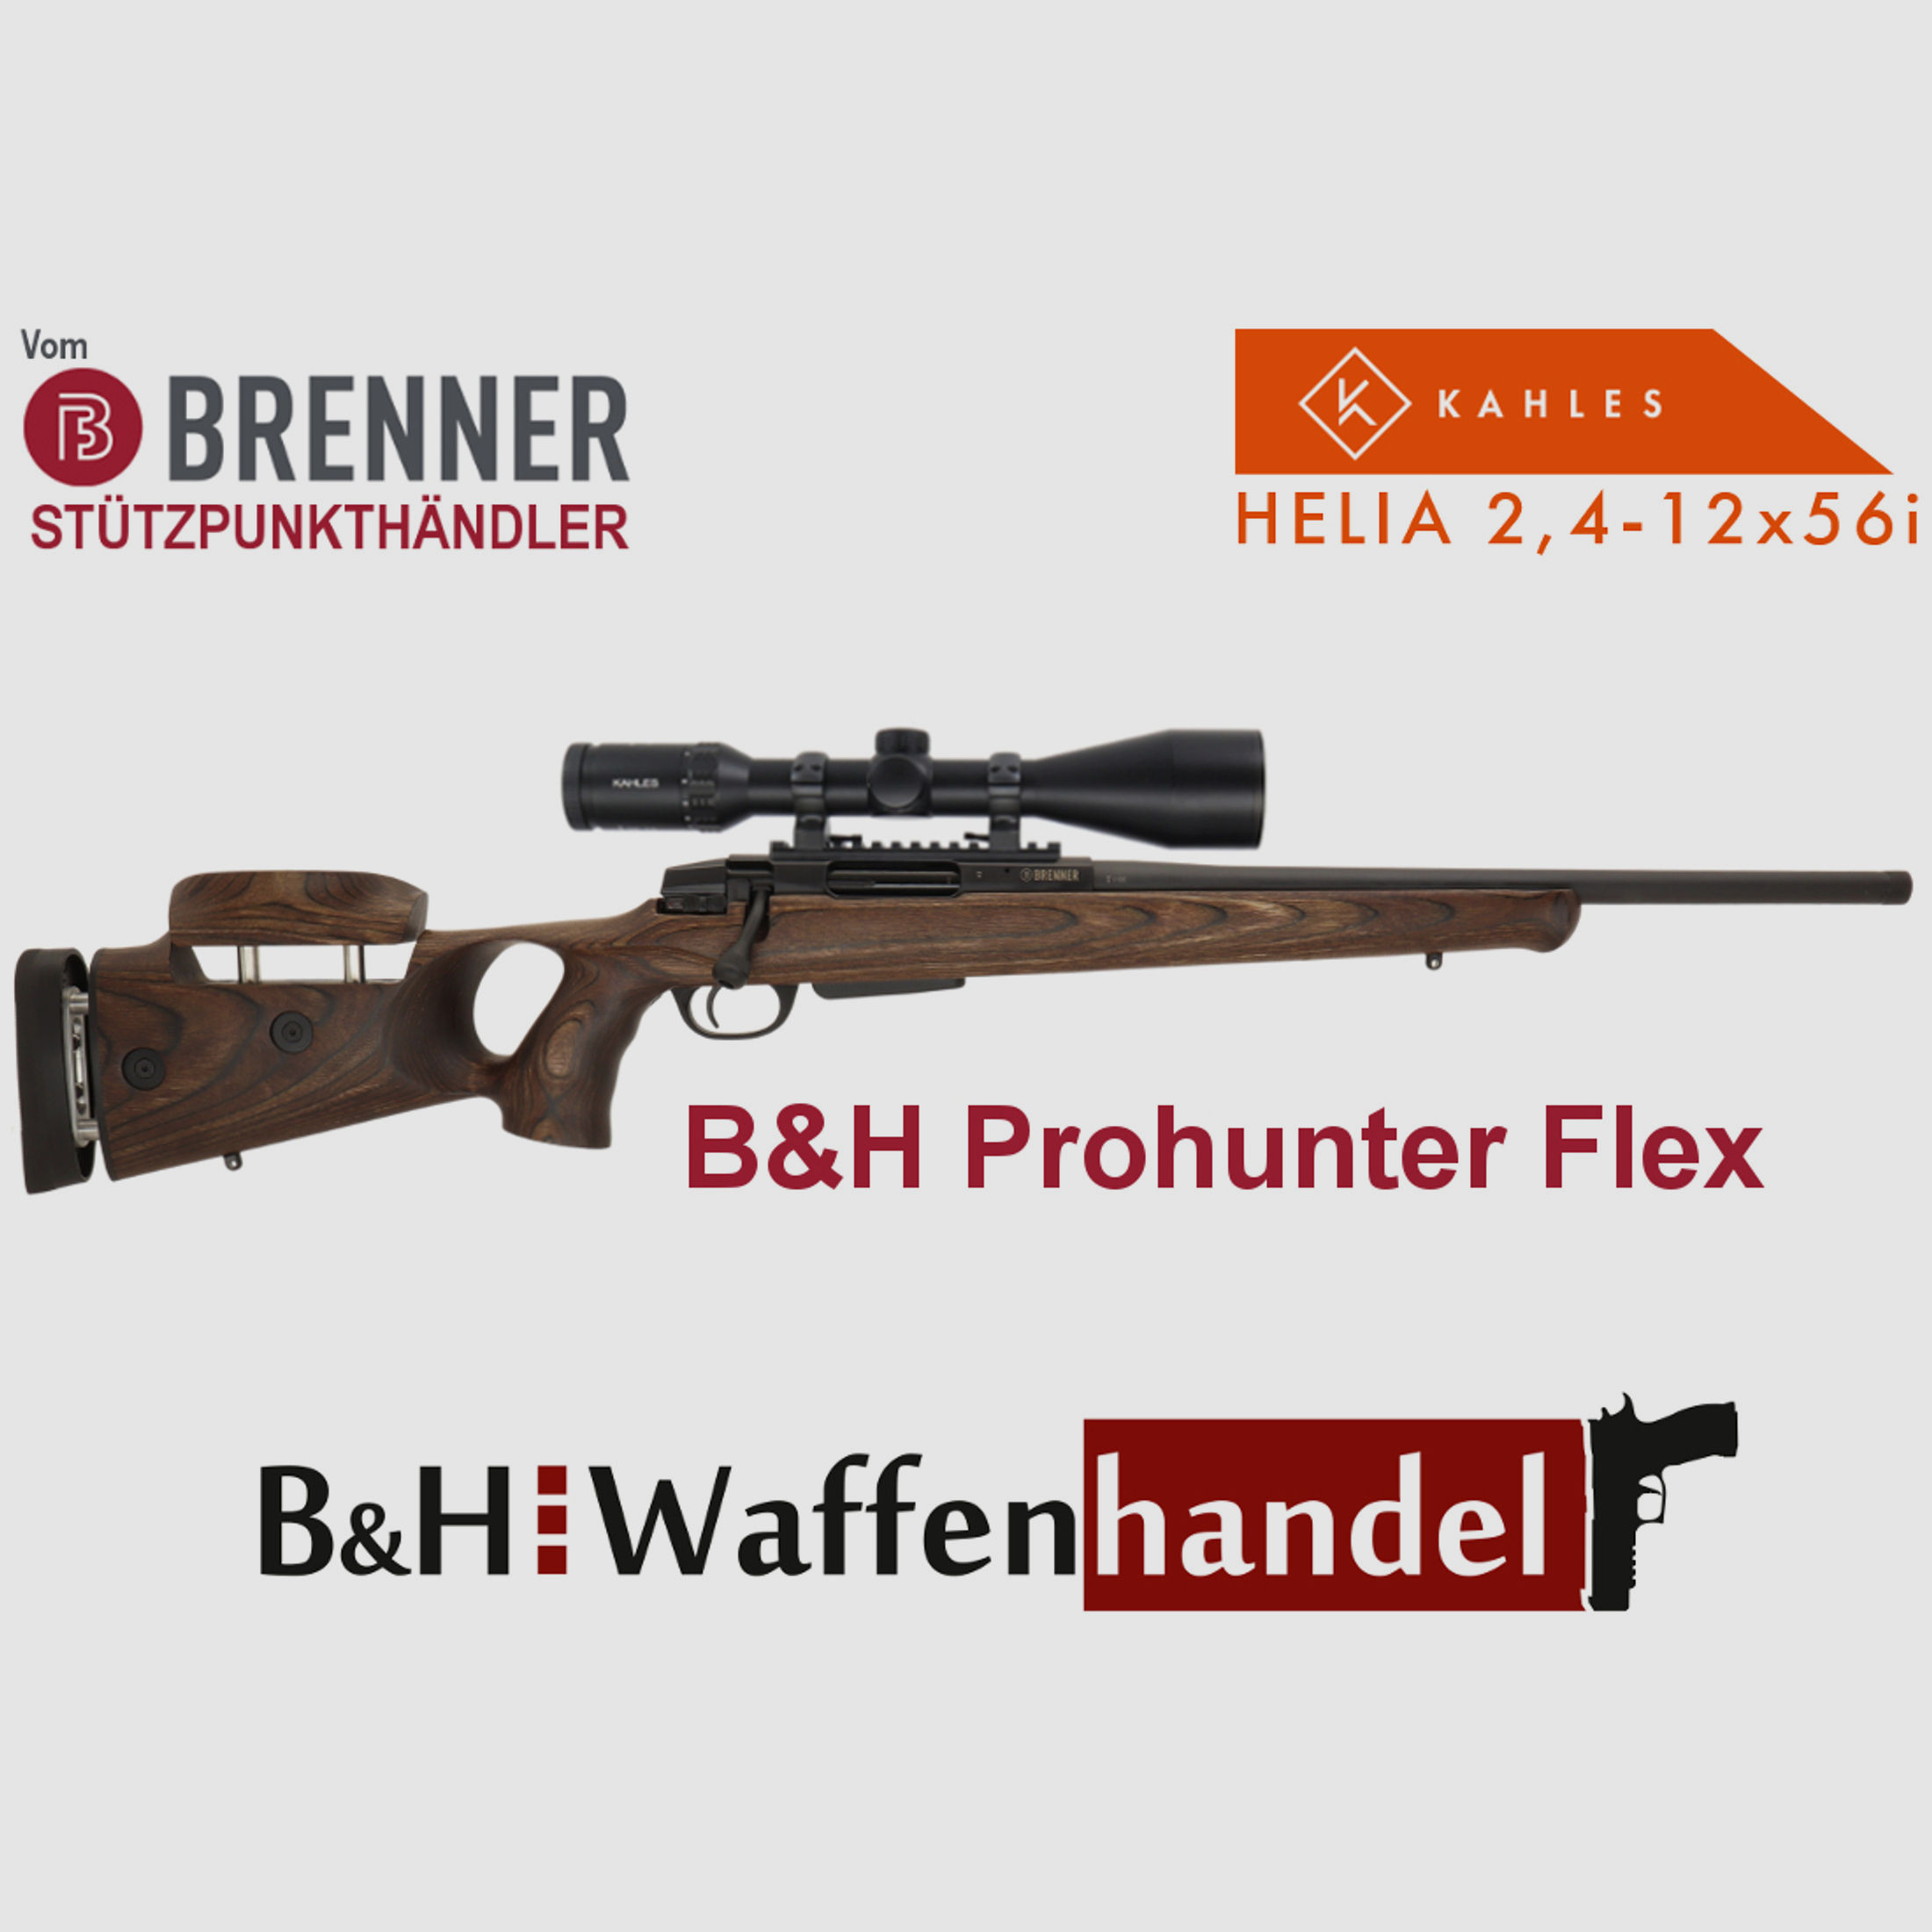 Komplettpaket: Brenner BR20 B&H Prohunter Flex Lochschaft mit doppelter Verstellung inkl. Kahles Helia 2.4-12x56i (Art.Nr.: BR20PHFP11) Finanzierung möglich